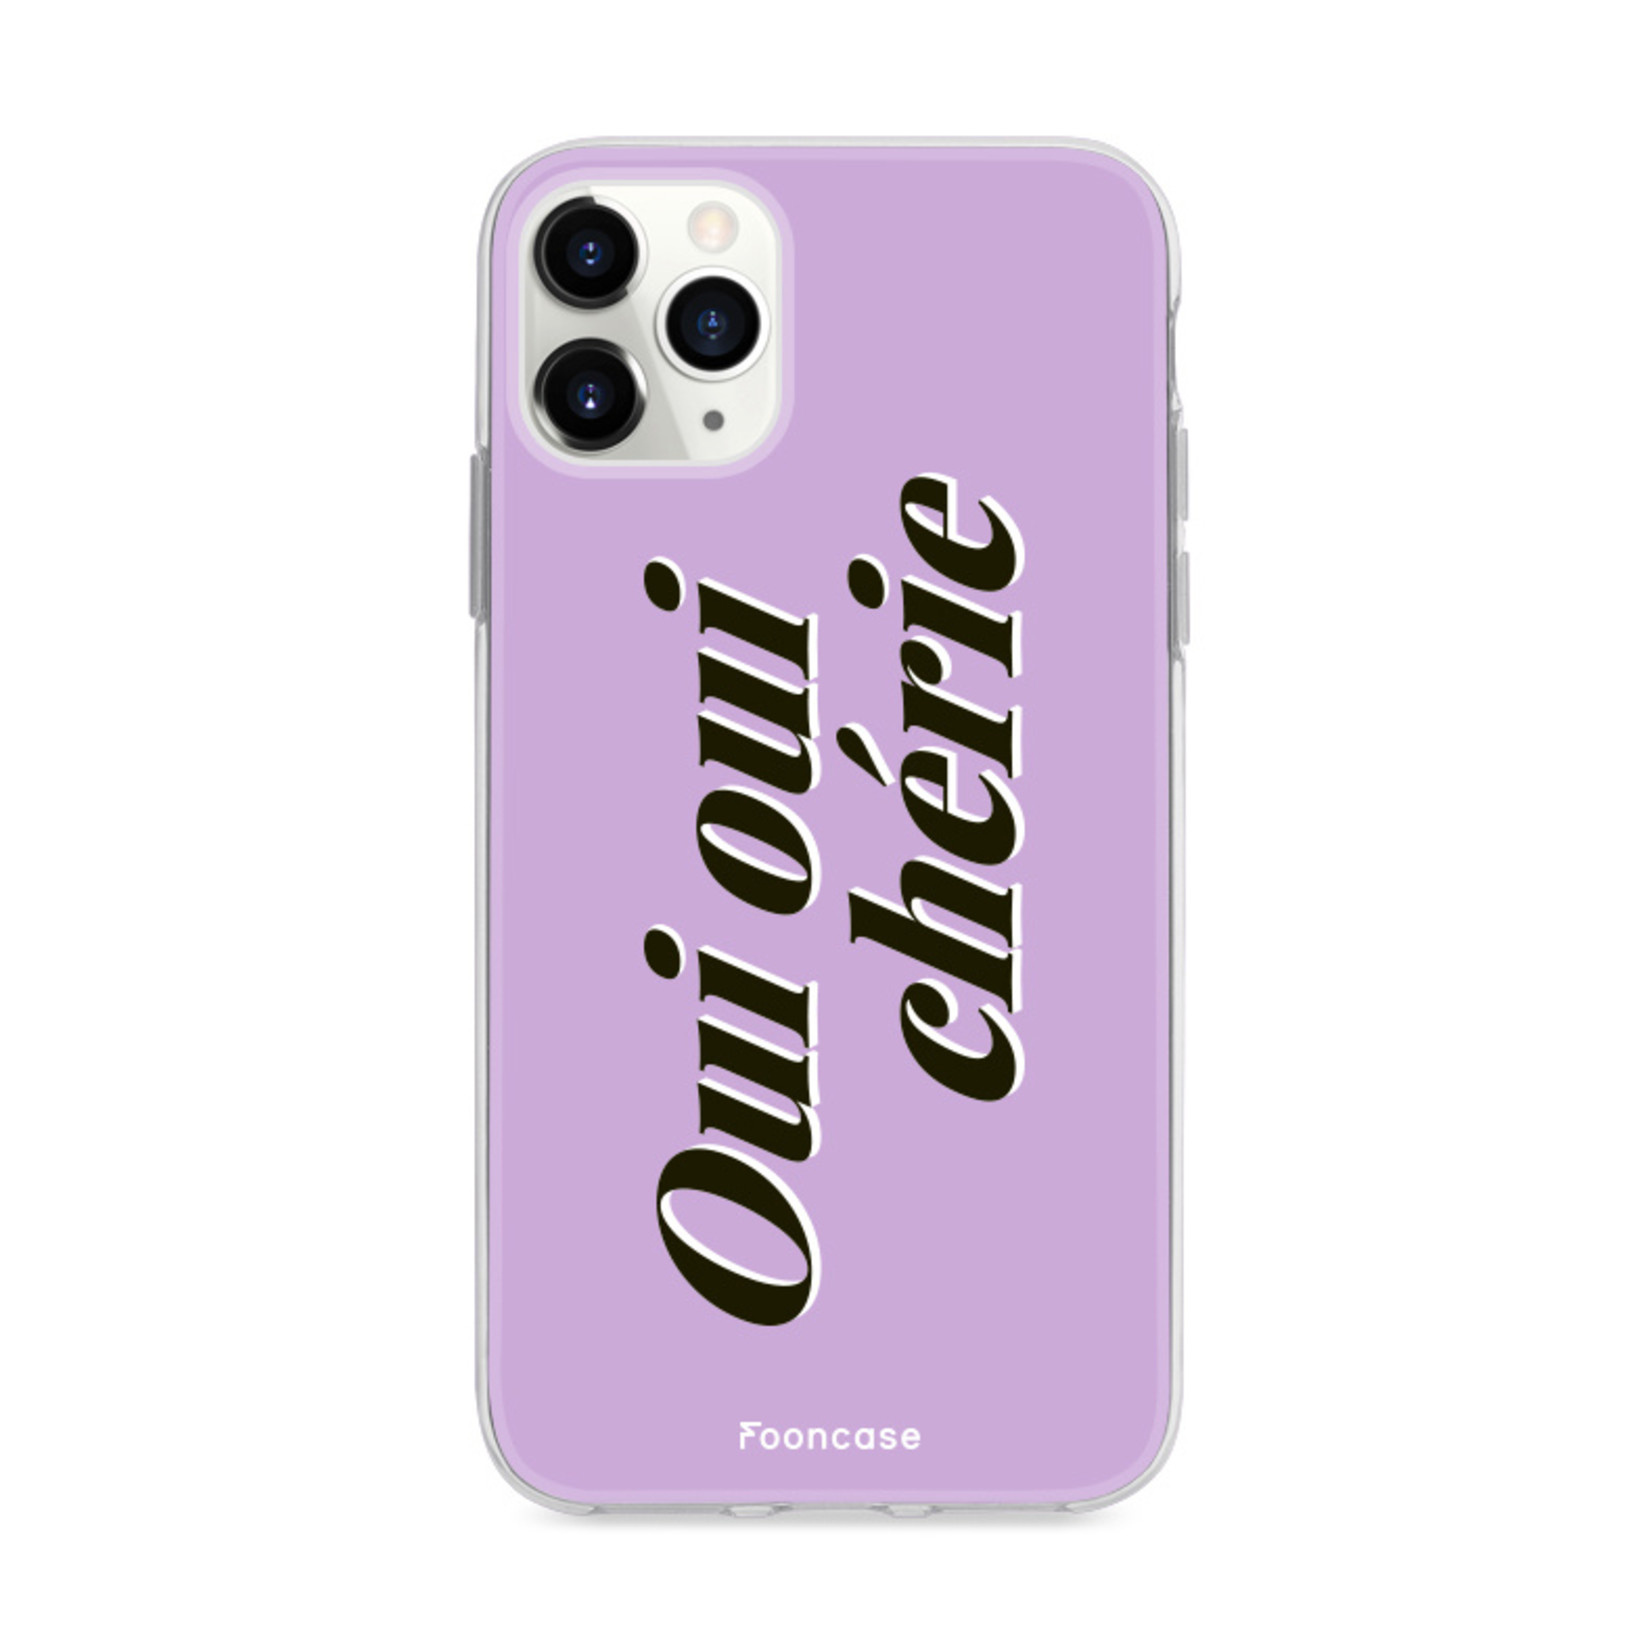 FOONCASE IPhone 11 Pro Max Cover - Oui Oui Chérie